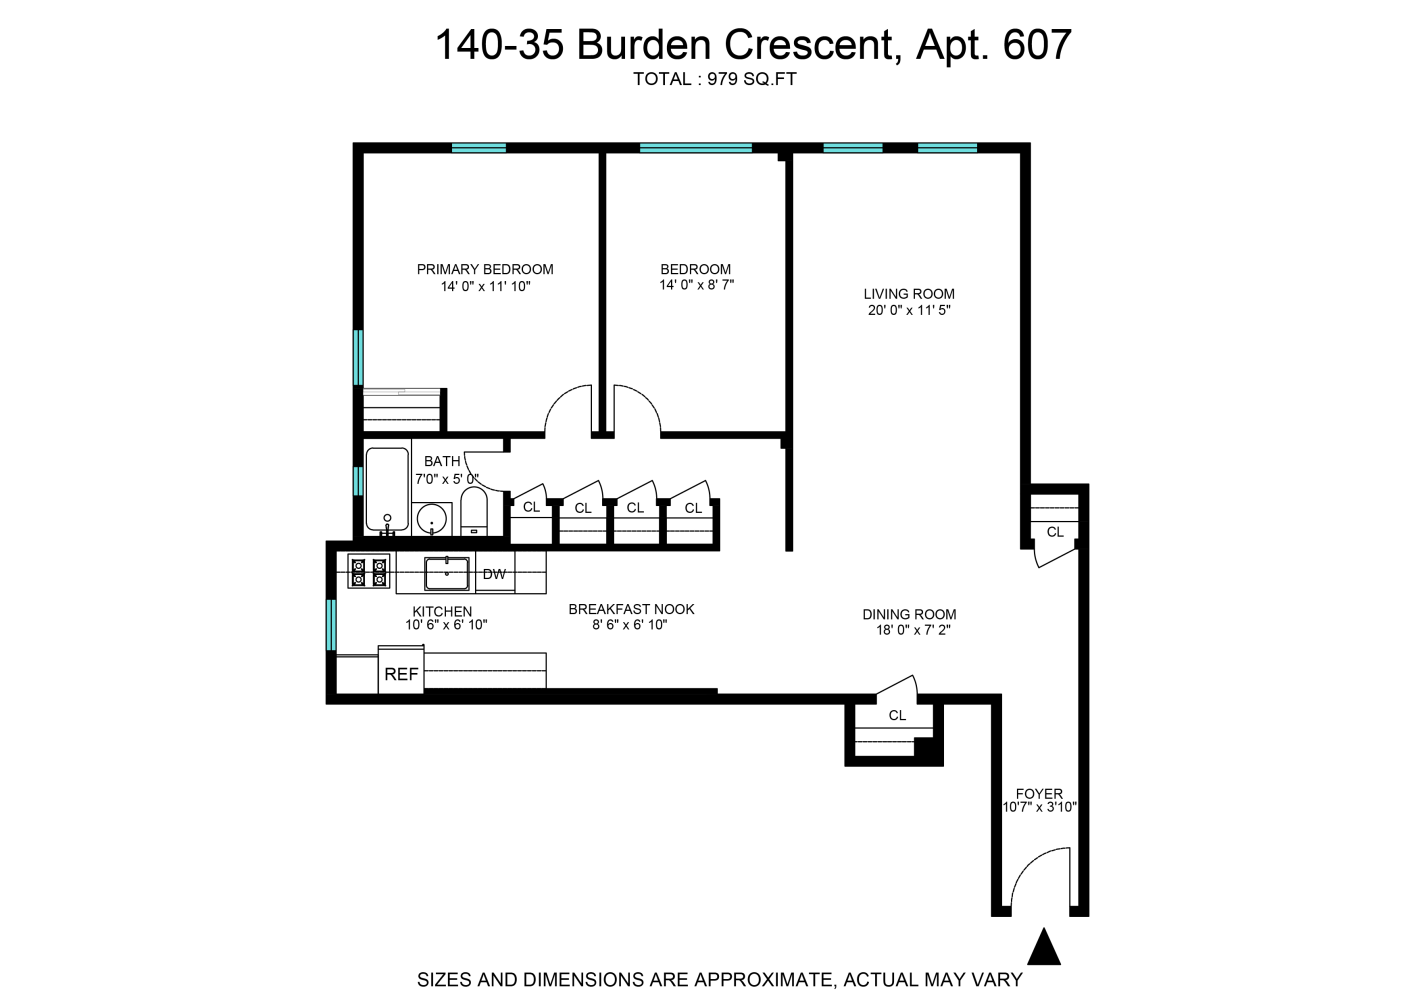 Floorplan for 140-35 Burden Crescent